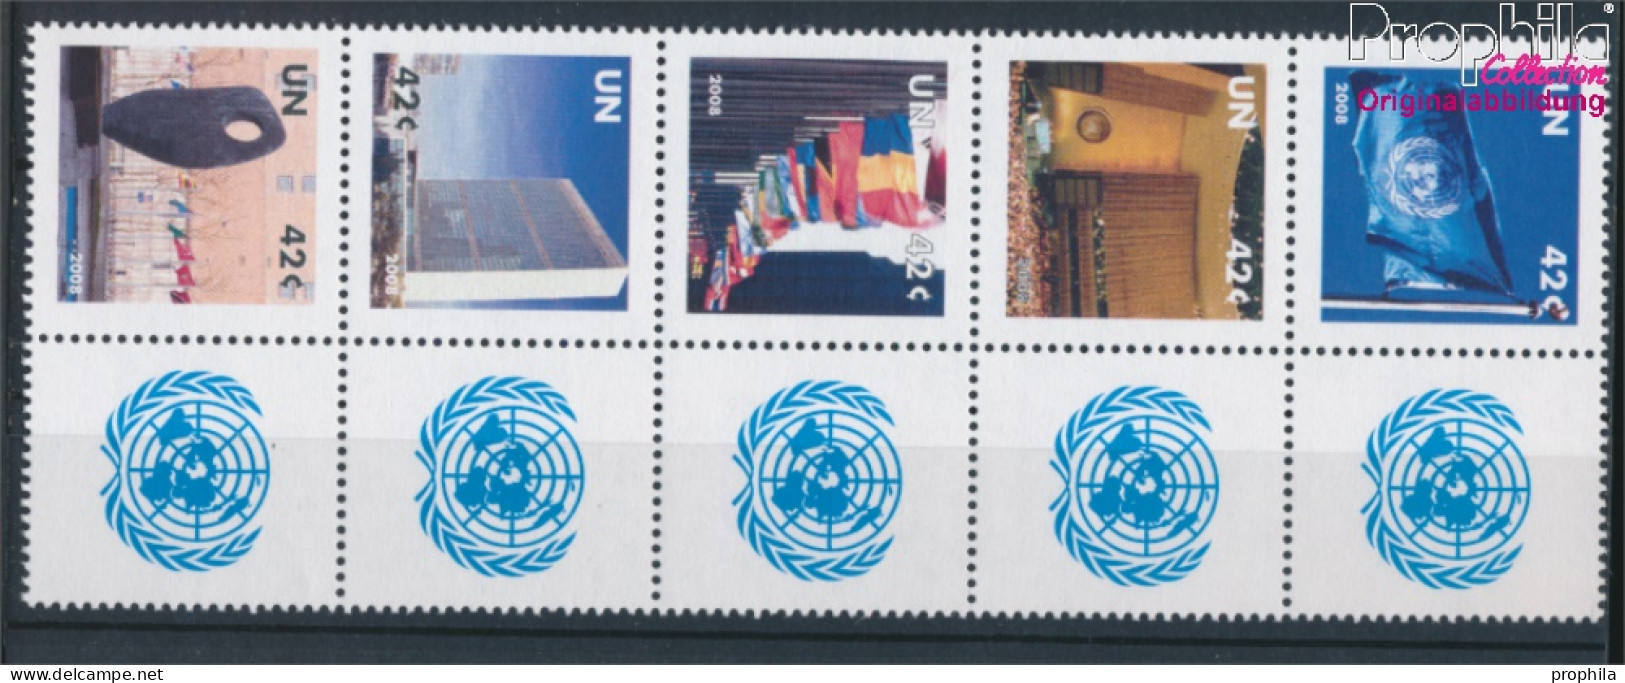 UNO - New York 1091-1095 Zehnerblock (kompl.Ausg.) Postfrisch 2008 Grußmarken (10325900 - Ungebraucht